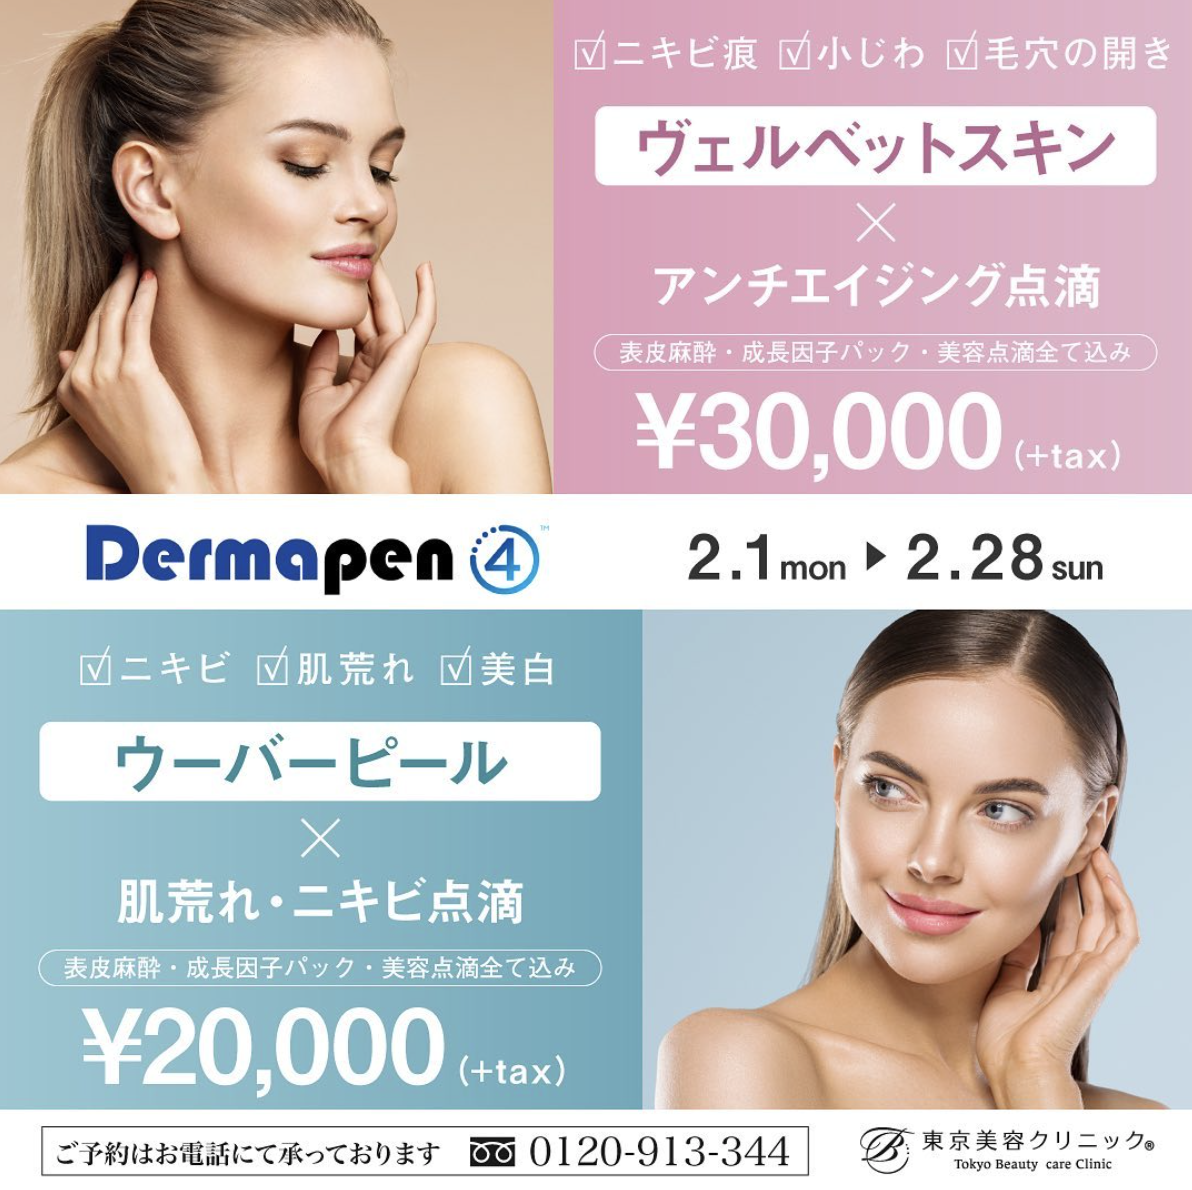 東京美容クリニック人気NO.1、ダーマペンキャンペーン実施中！マスク生活のうちに、攻めの美容医療にチャレンジ